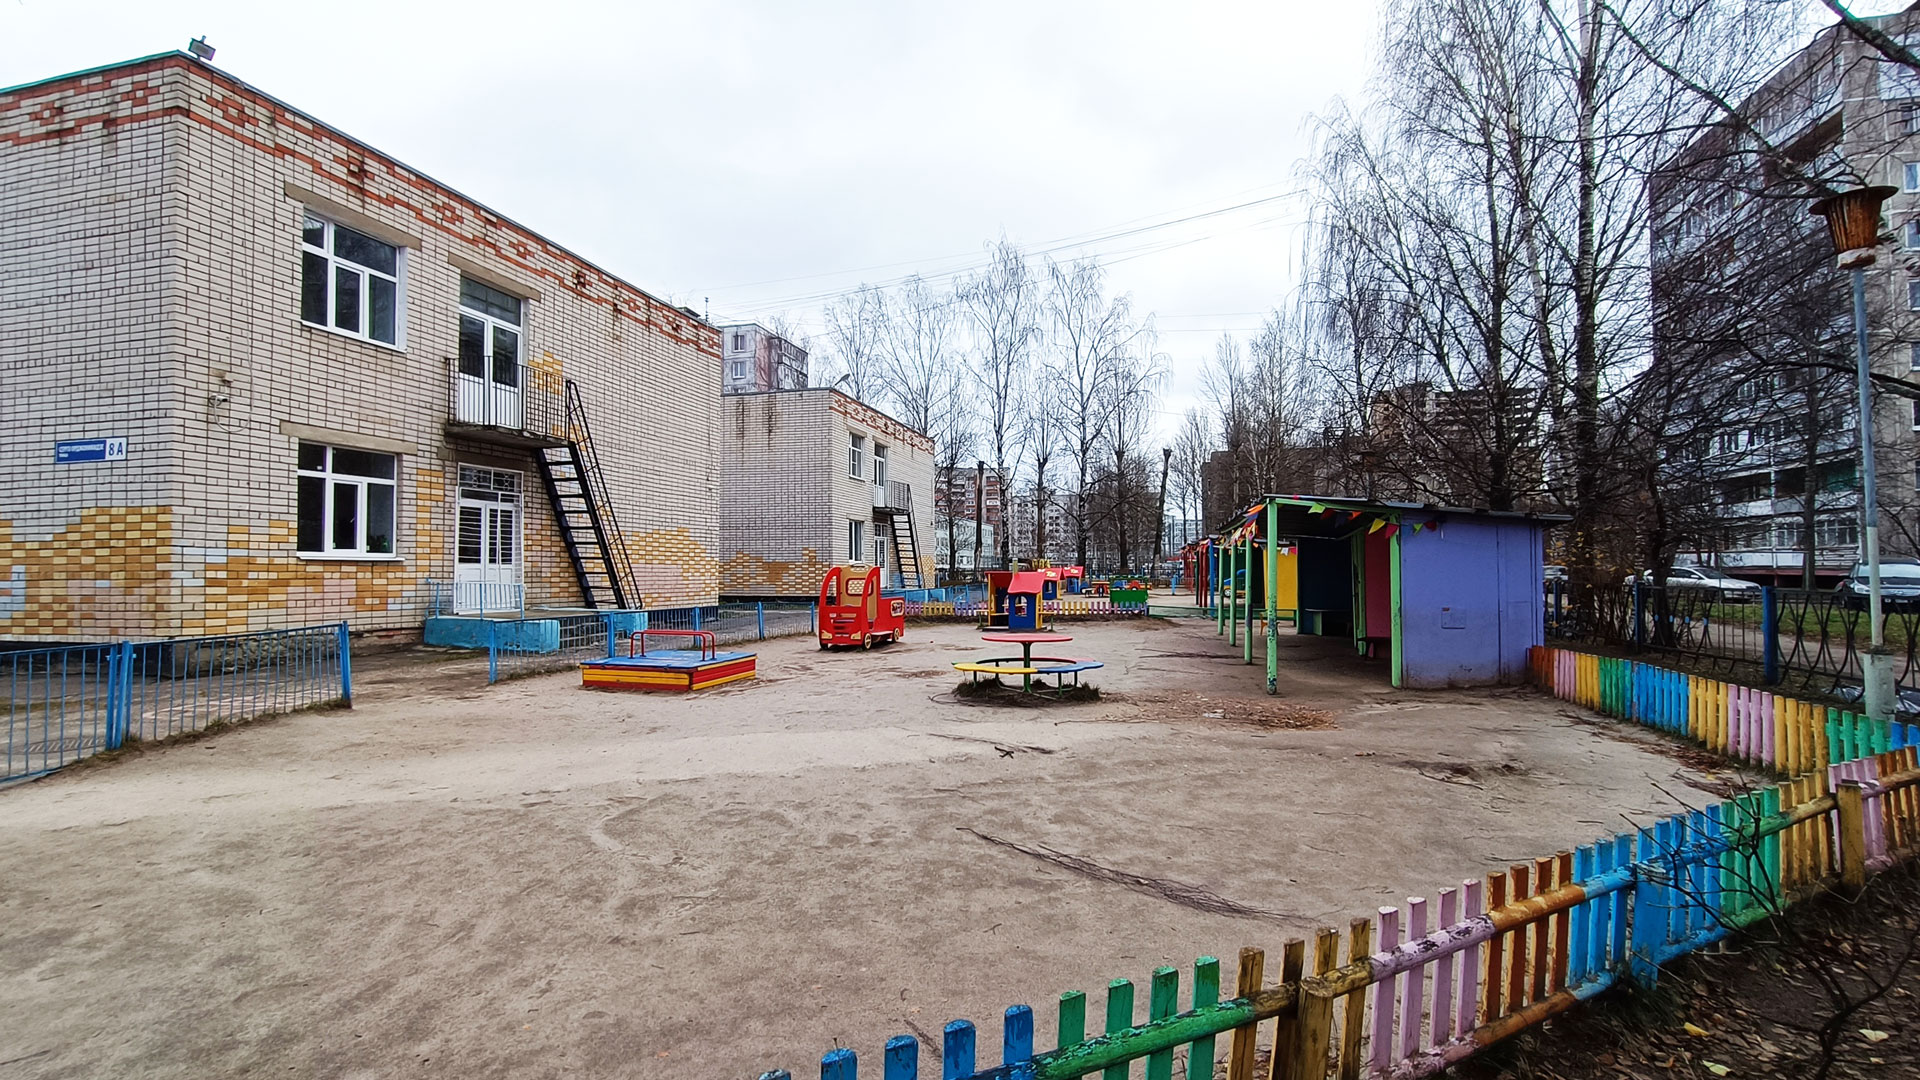 Детский сад 139 Ярославль: общий вид здания.